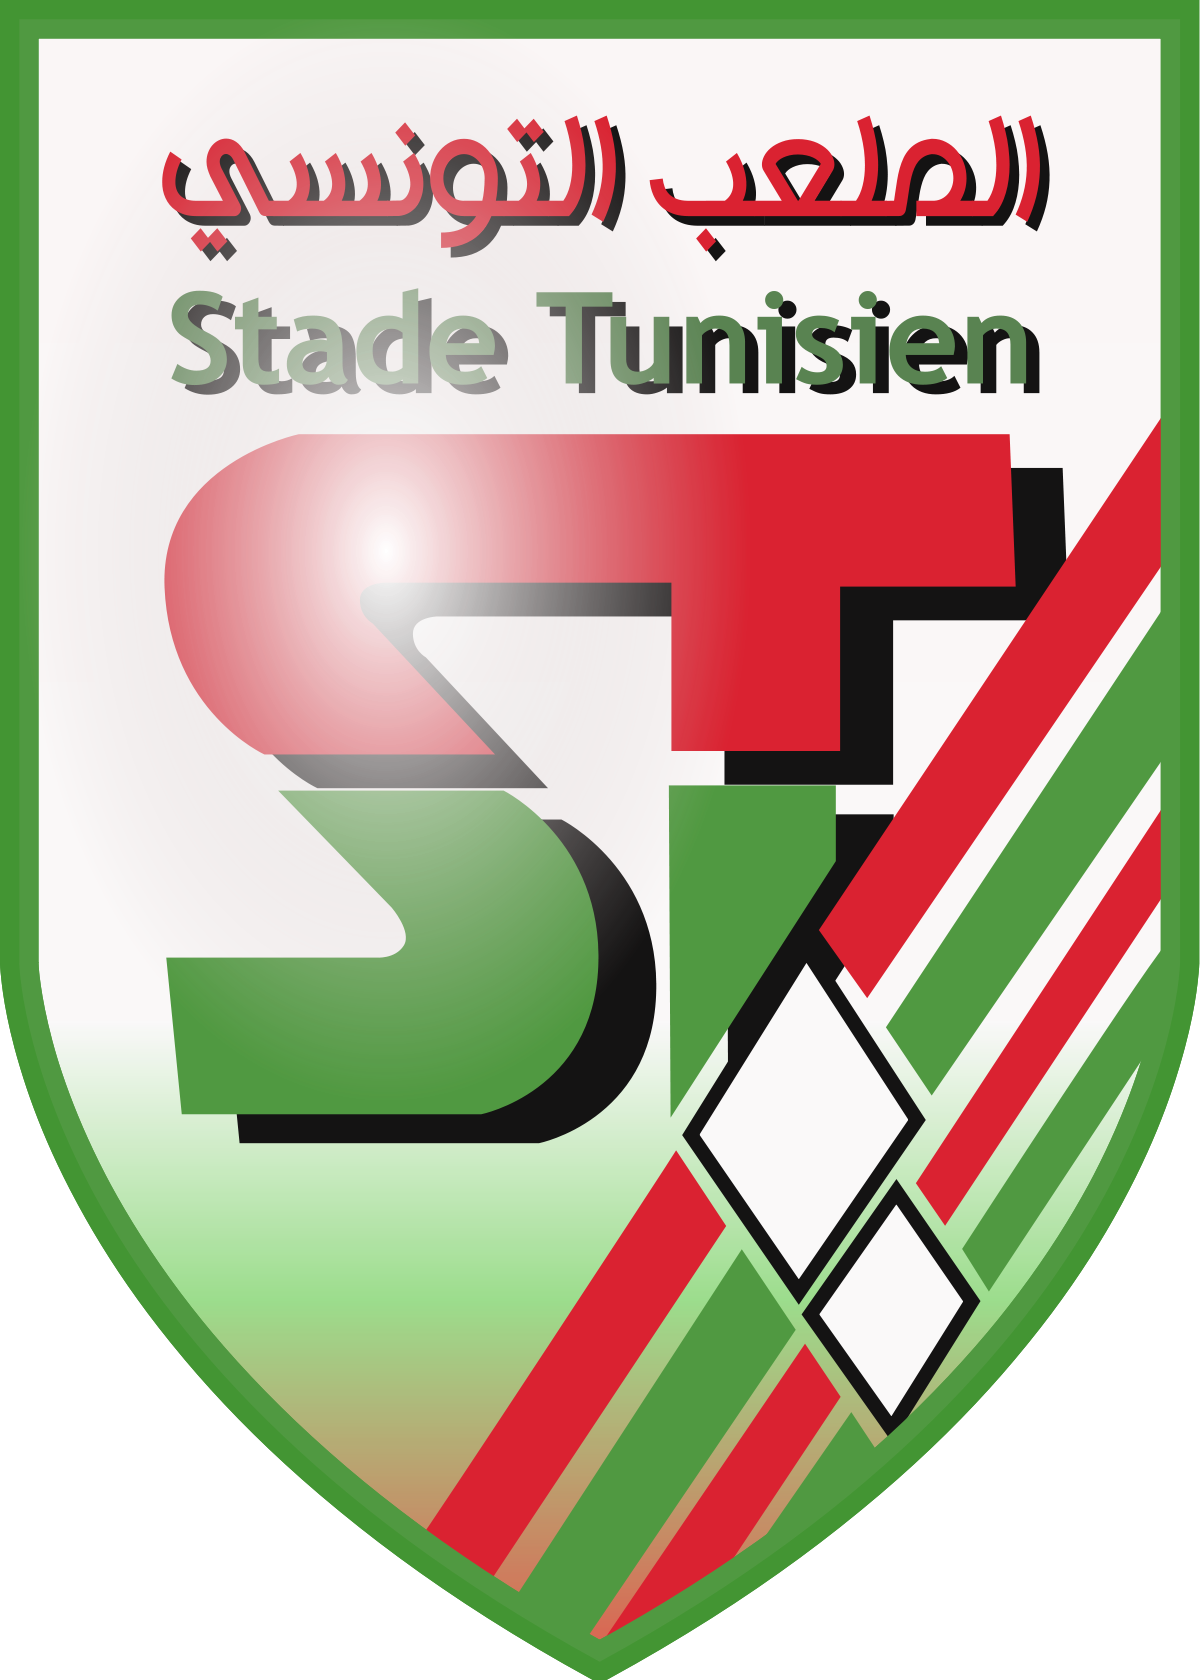 Stade Tunisien (ST)